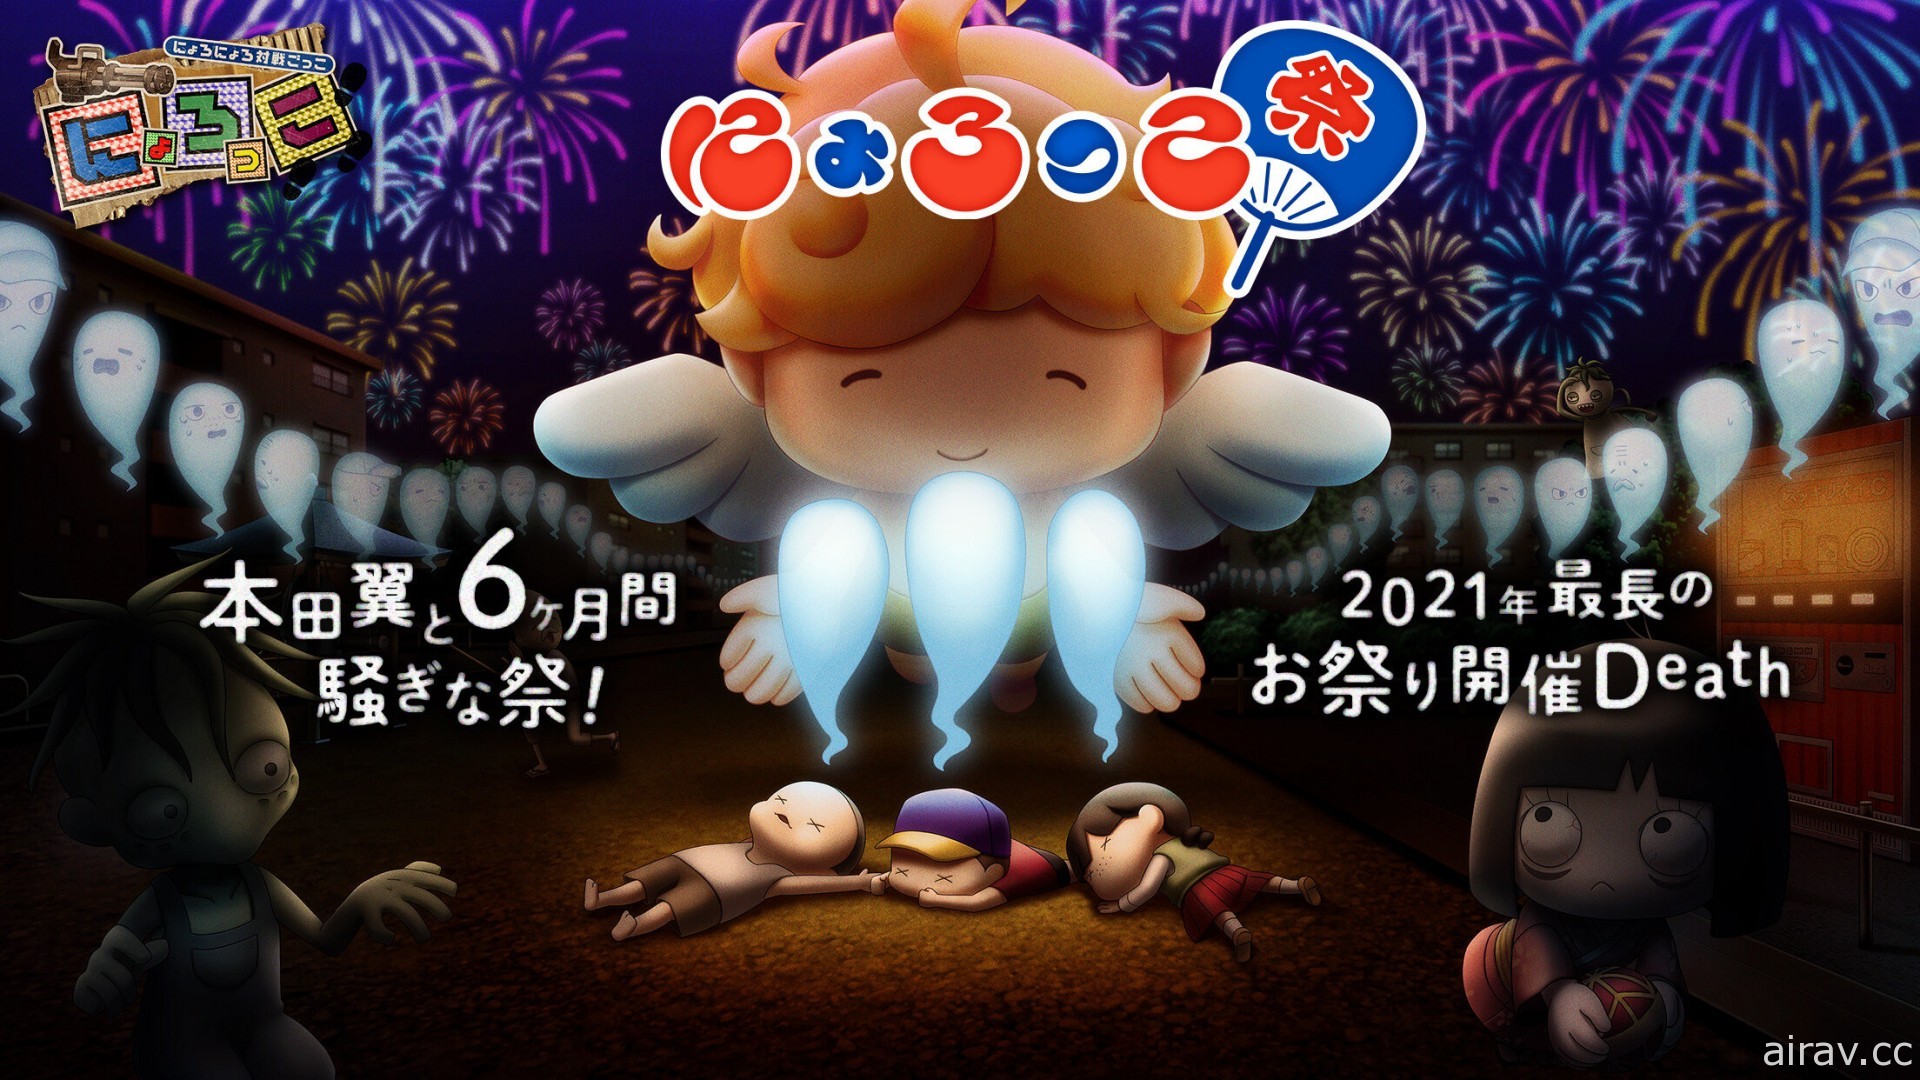 本田翼制作非对称对战游戏《Nyorokko》今夏于日本推出 仅提供 6 个月的限定服务